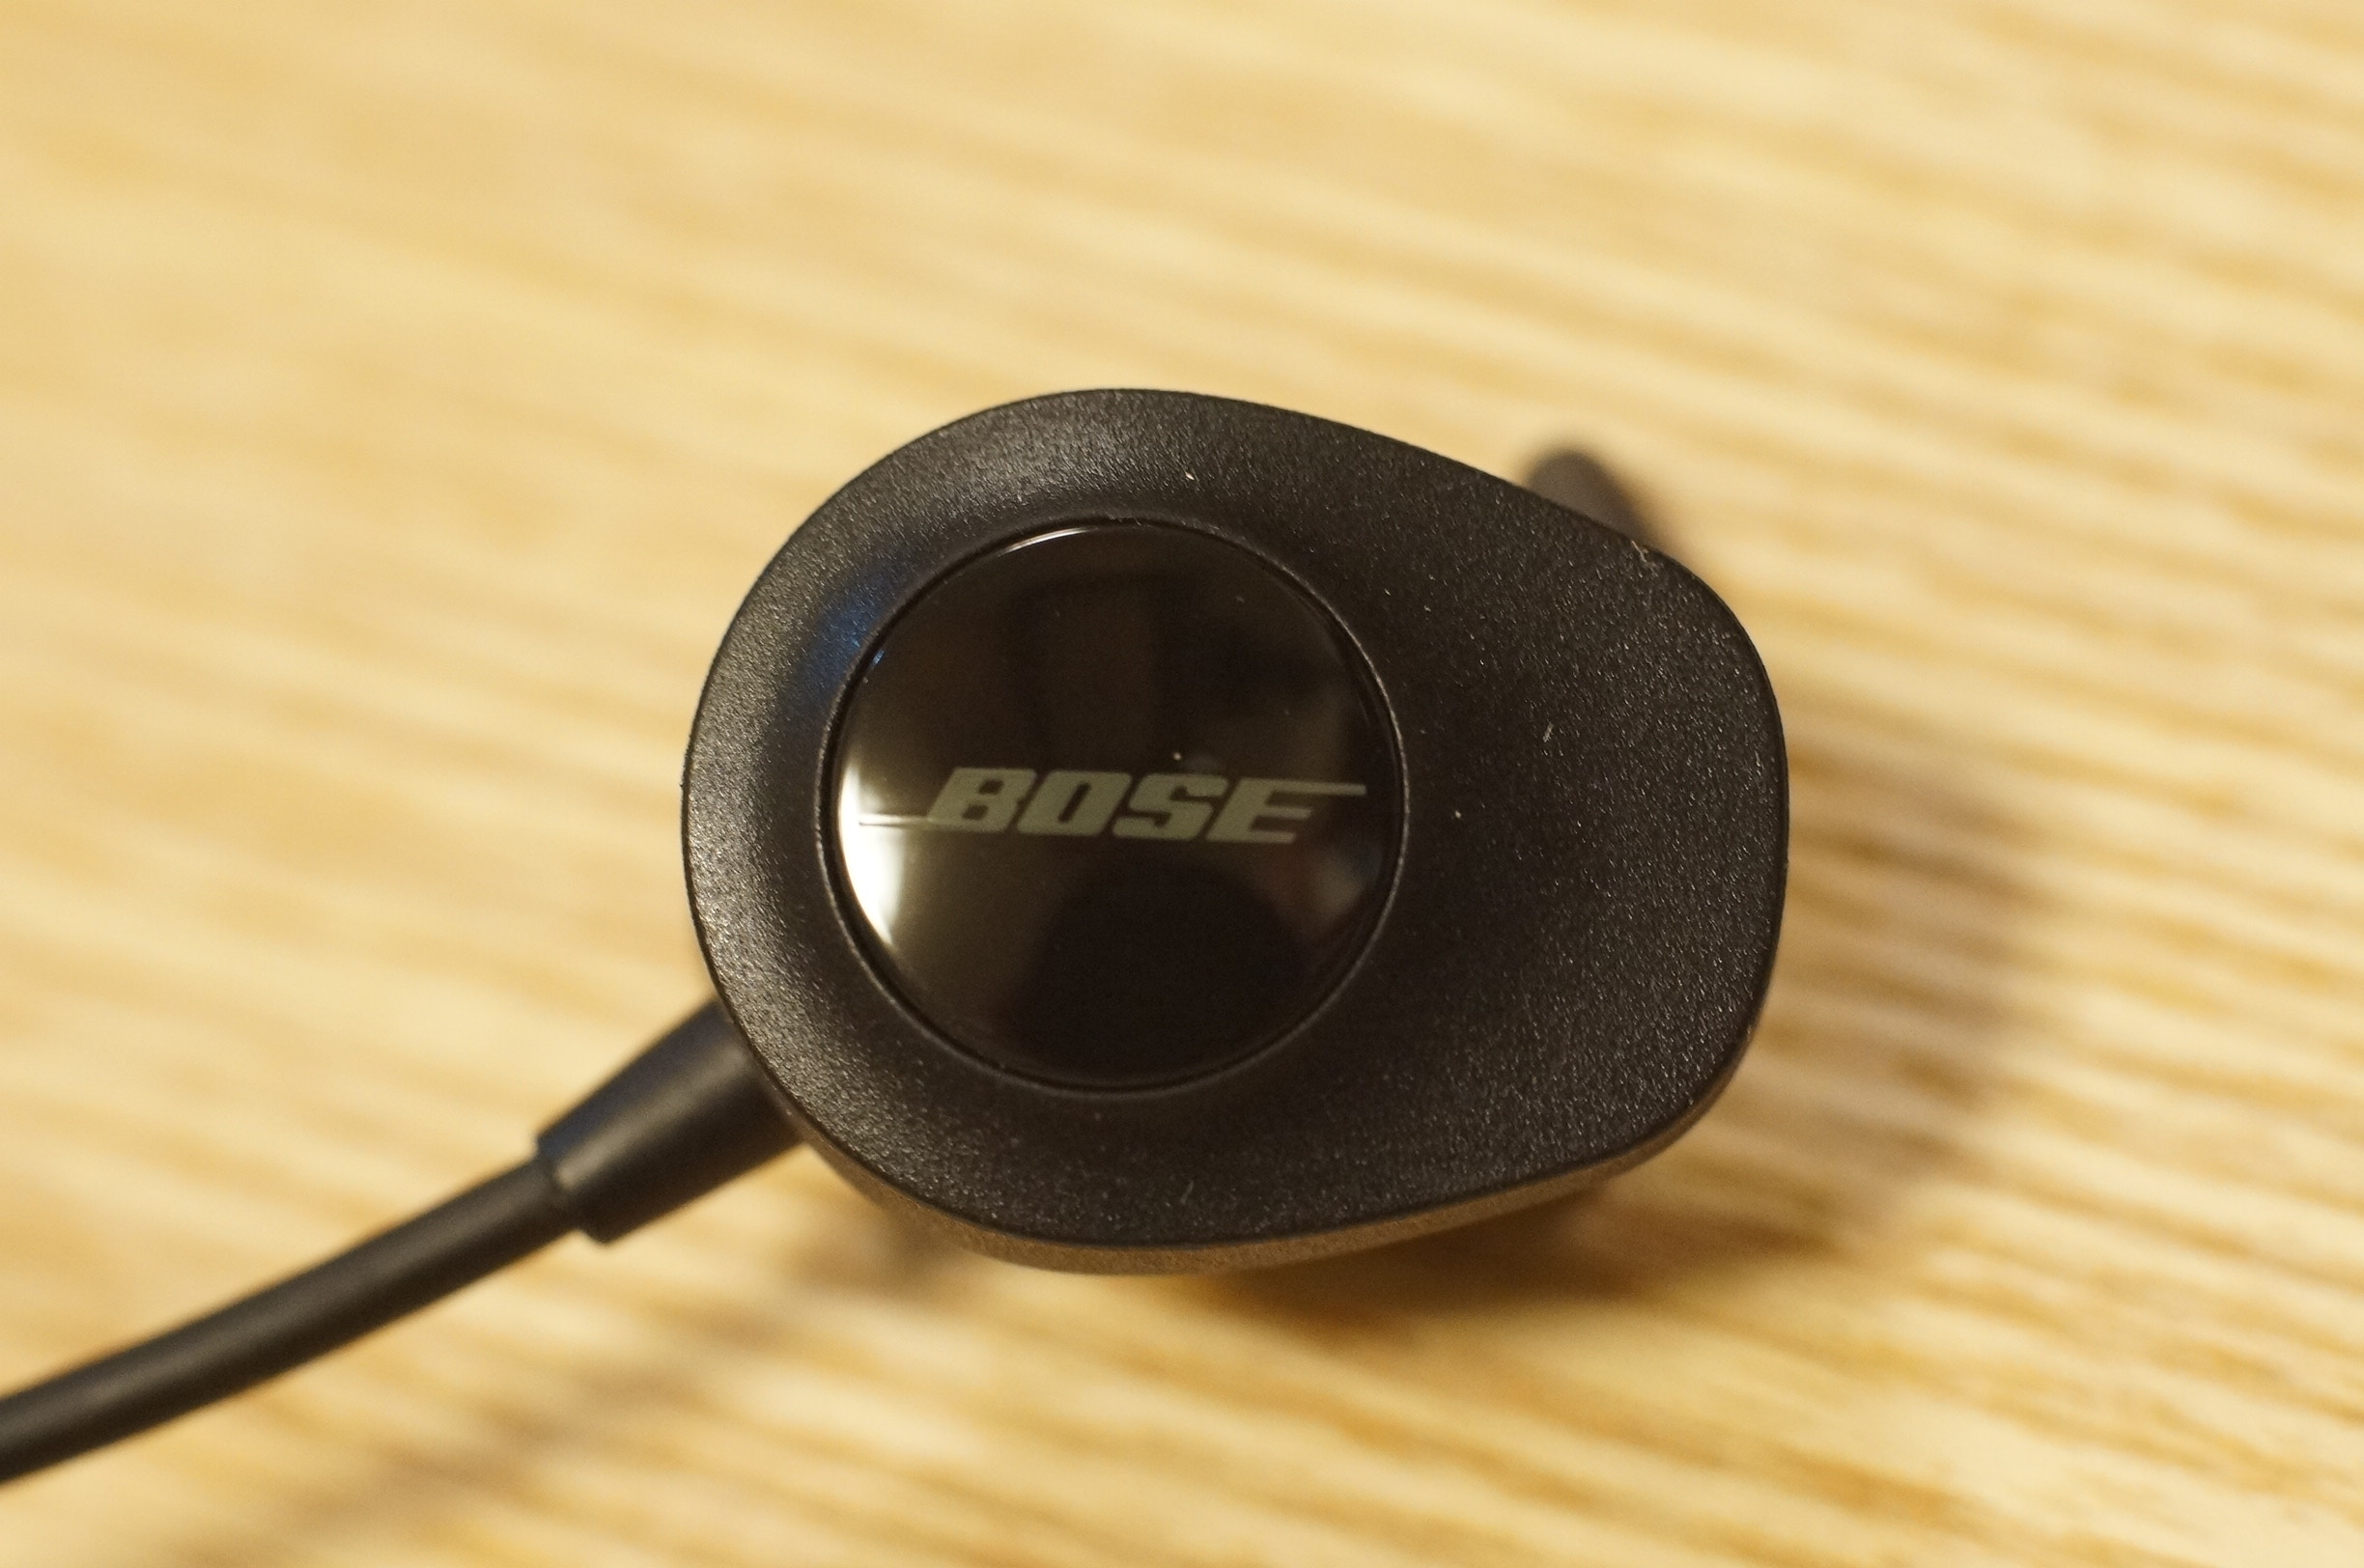 発売されたばかりの Bose SoundSport wireless headphones を開封 